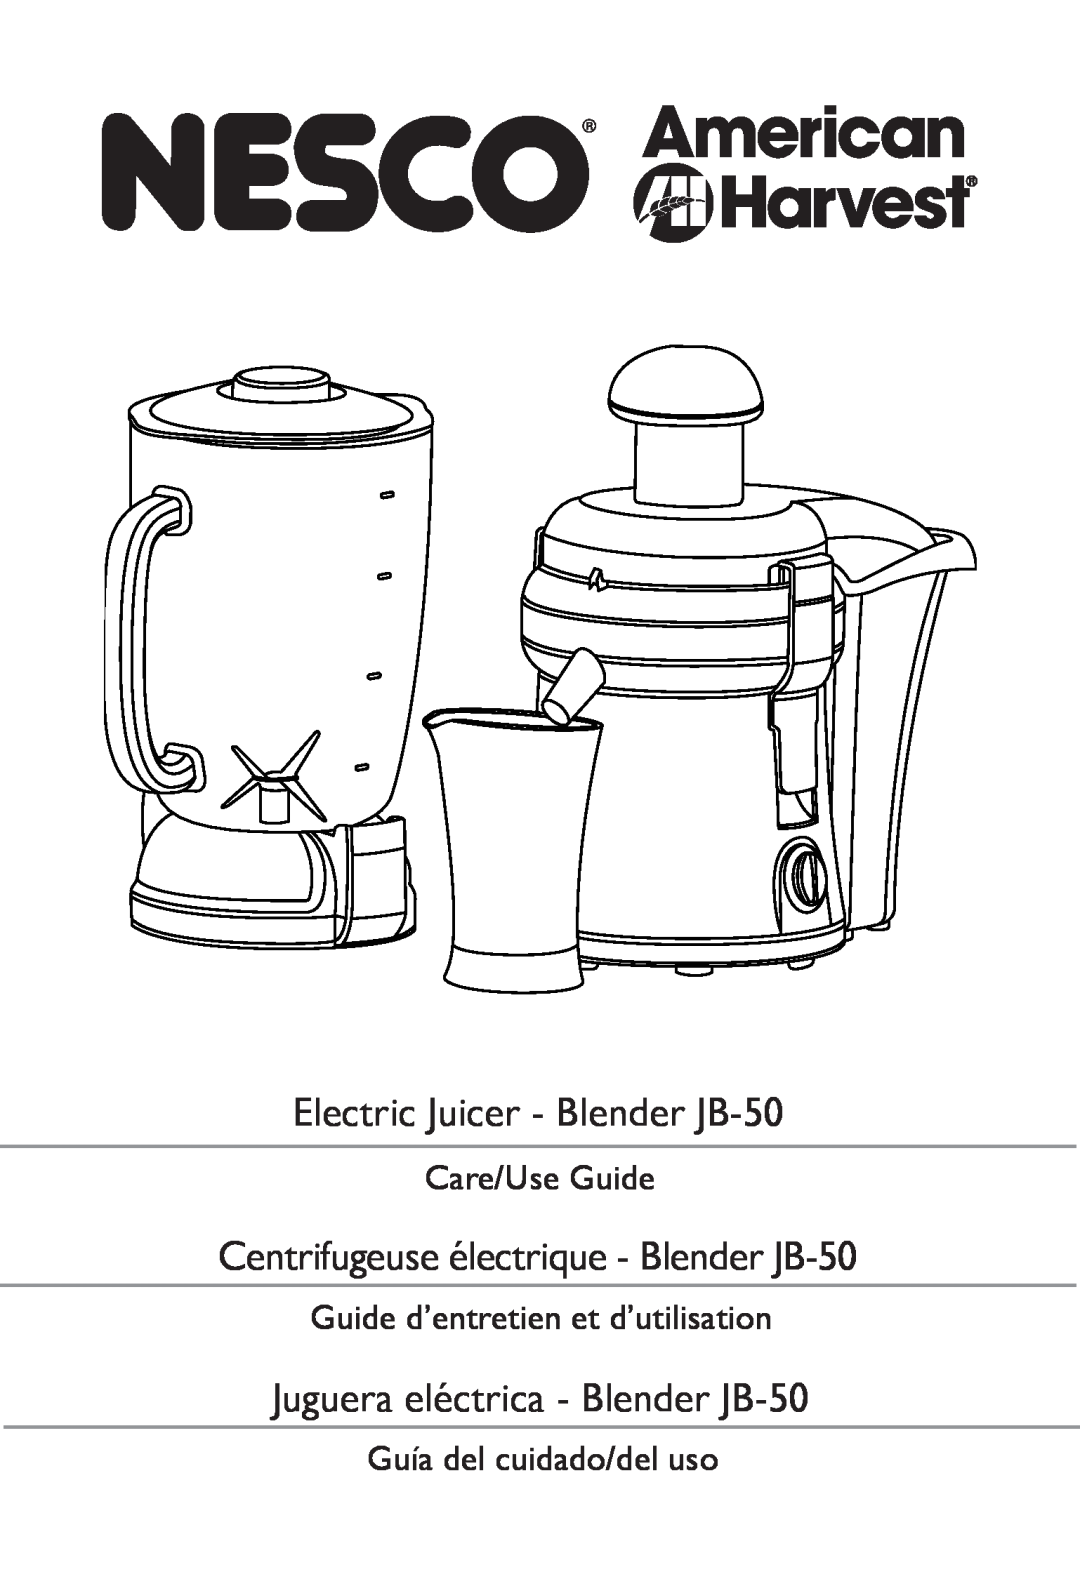 Nesco manual Electric Juicer - Blender JB-50, Centrifugeuse électrique - Blender JB-50, Care/Use Guide 